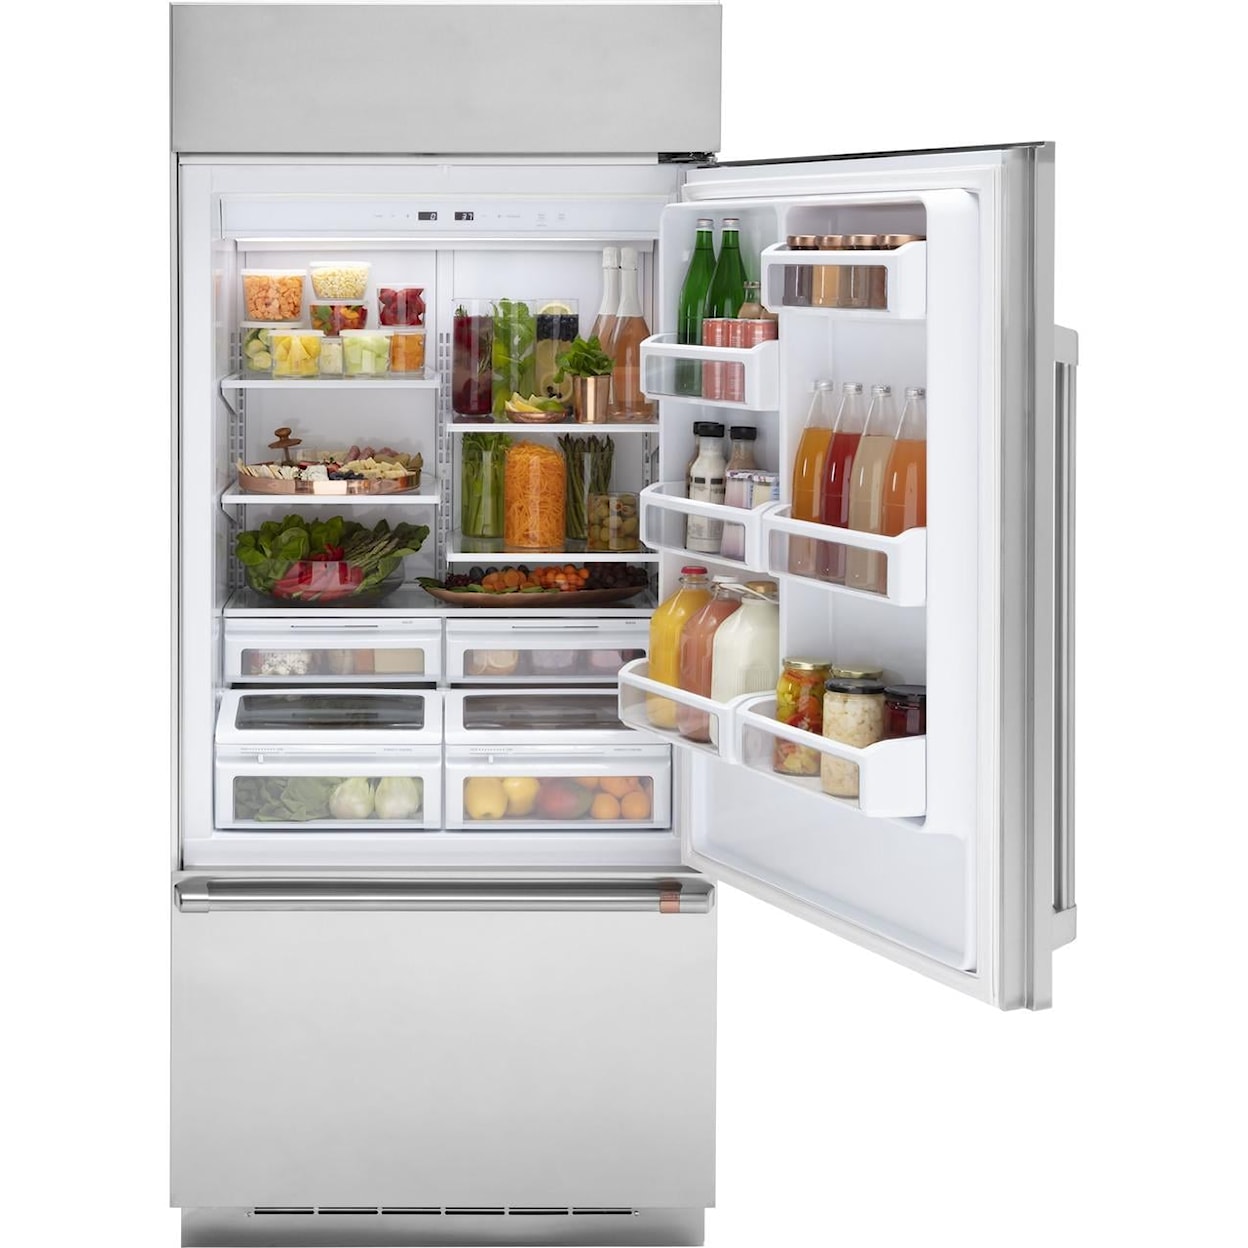 Café Refrigerators Bottom Freezer Built In Refrigerator